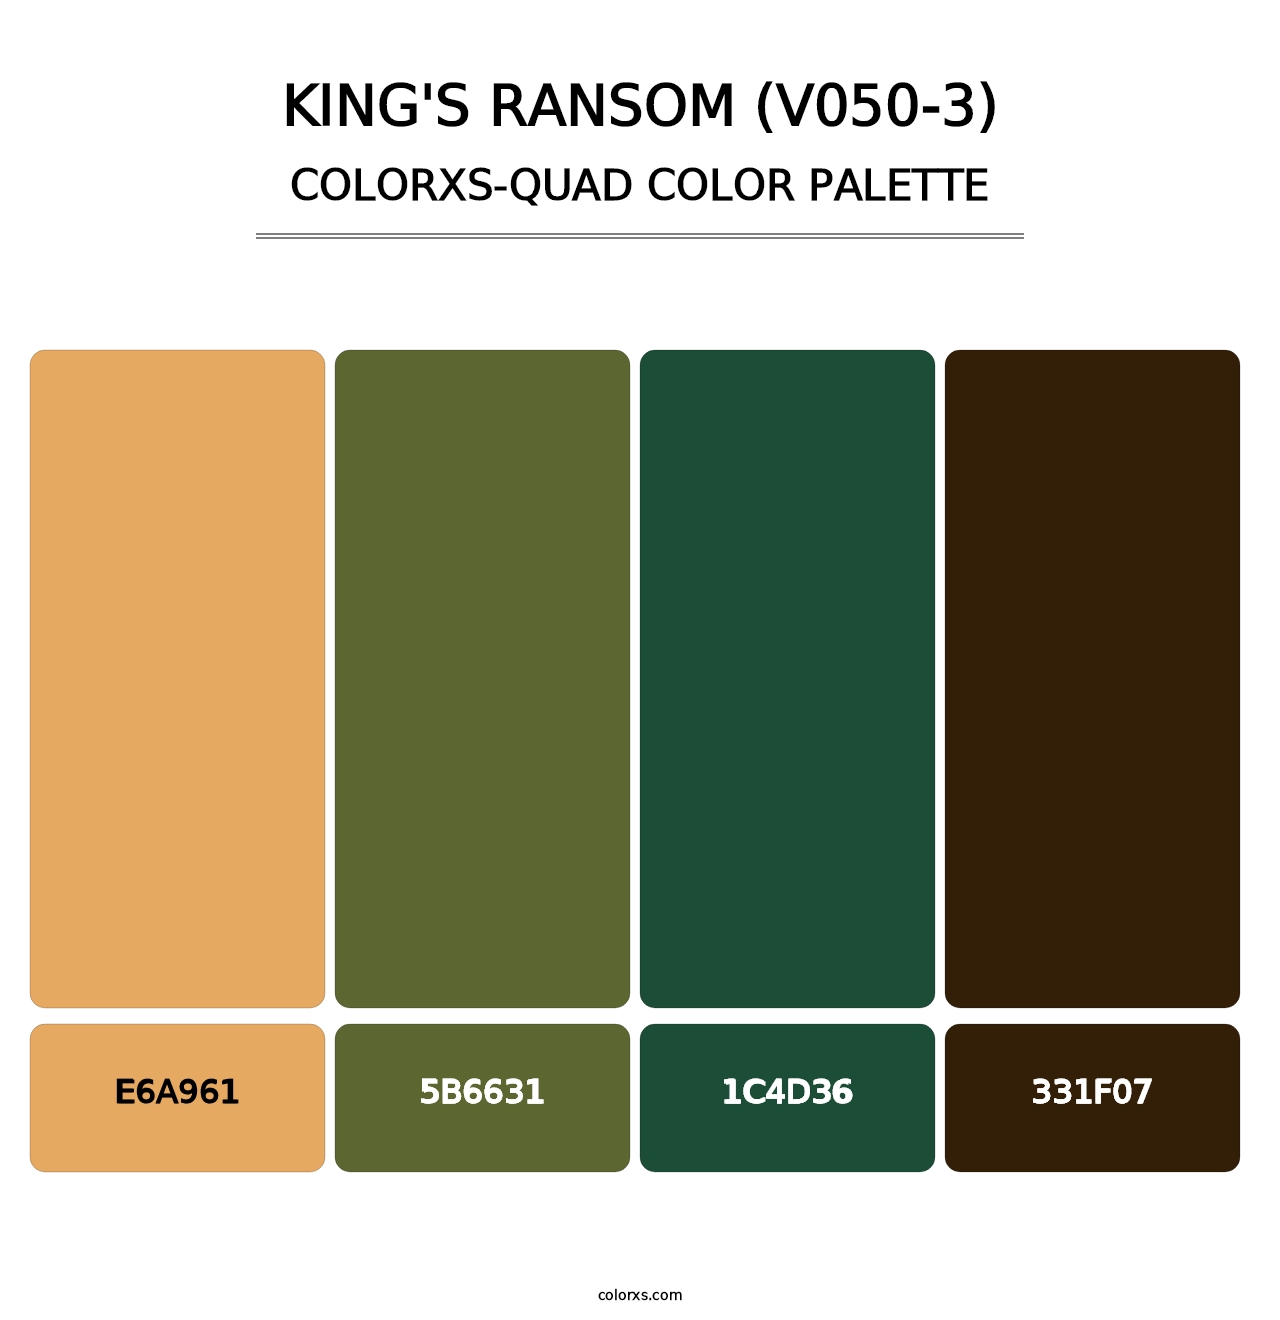 King's Ransom (V050-3) - Colorxs Quad Palette